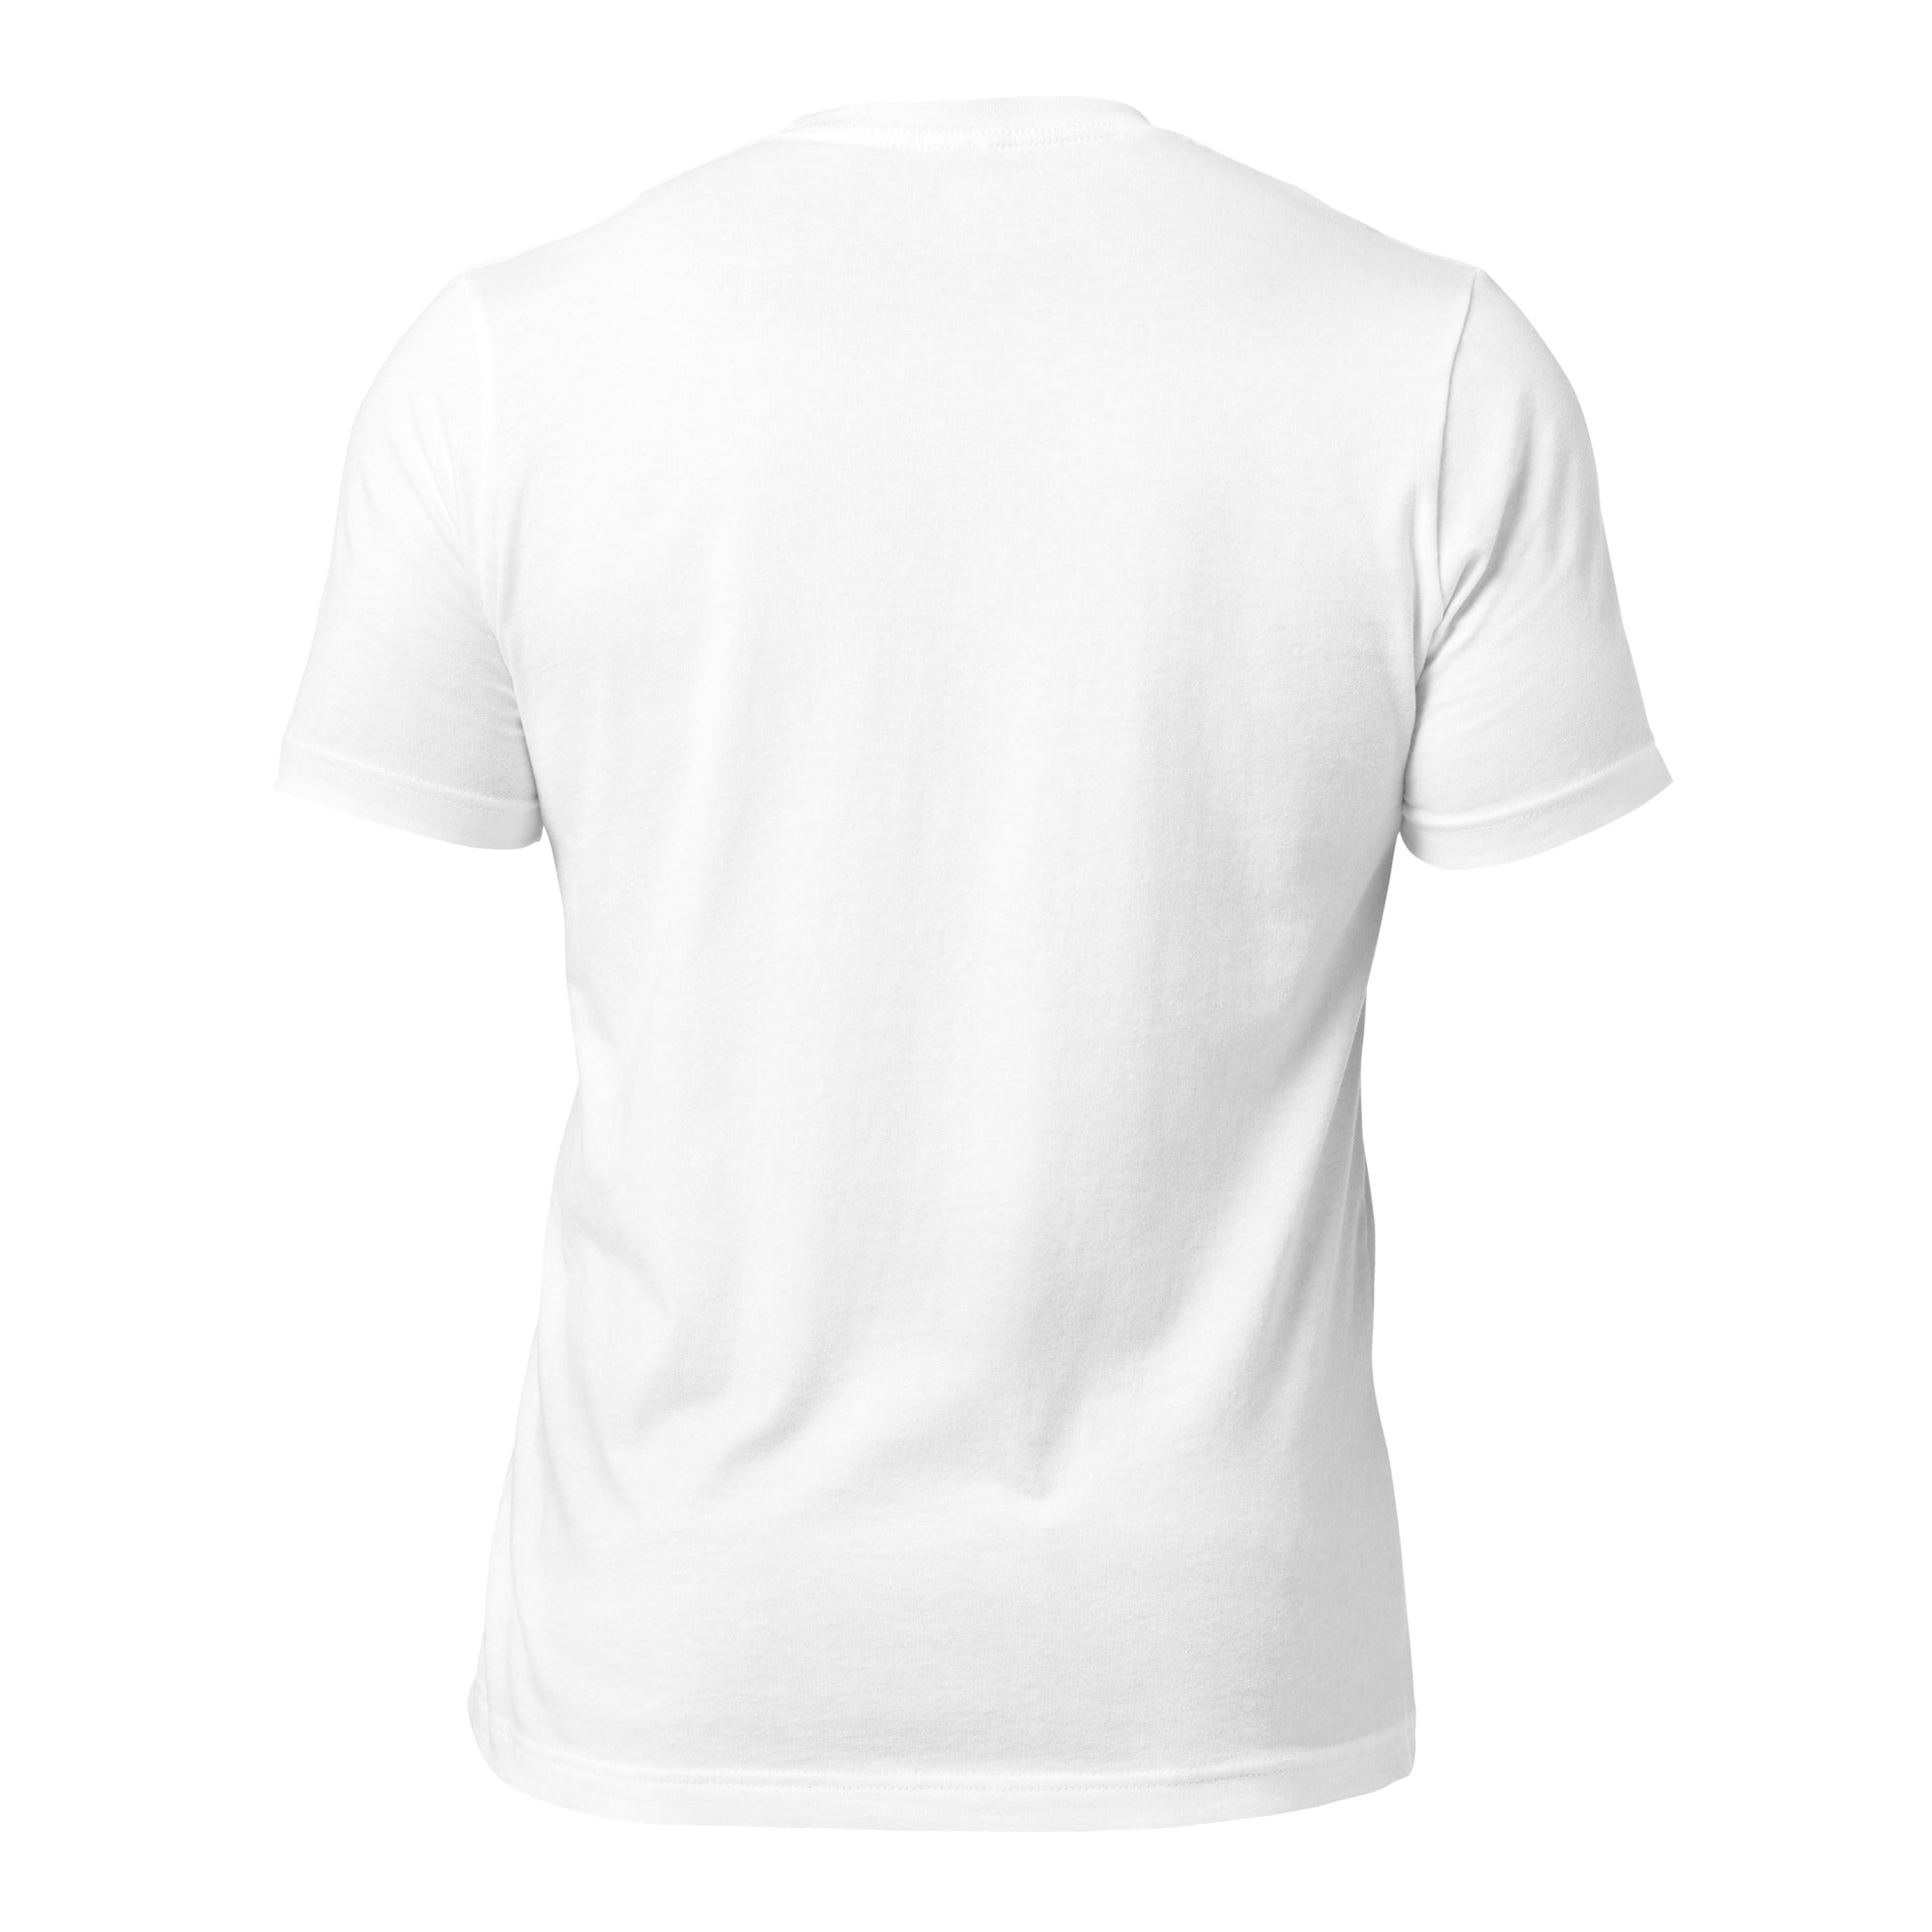 NEDC Unisex t-shirt